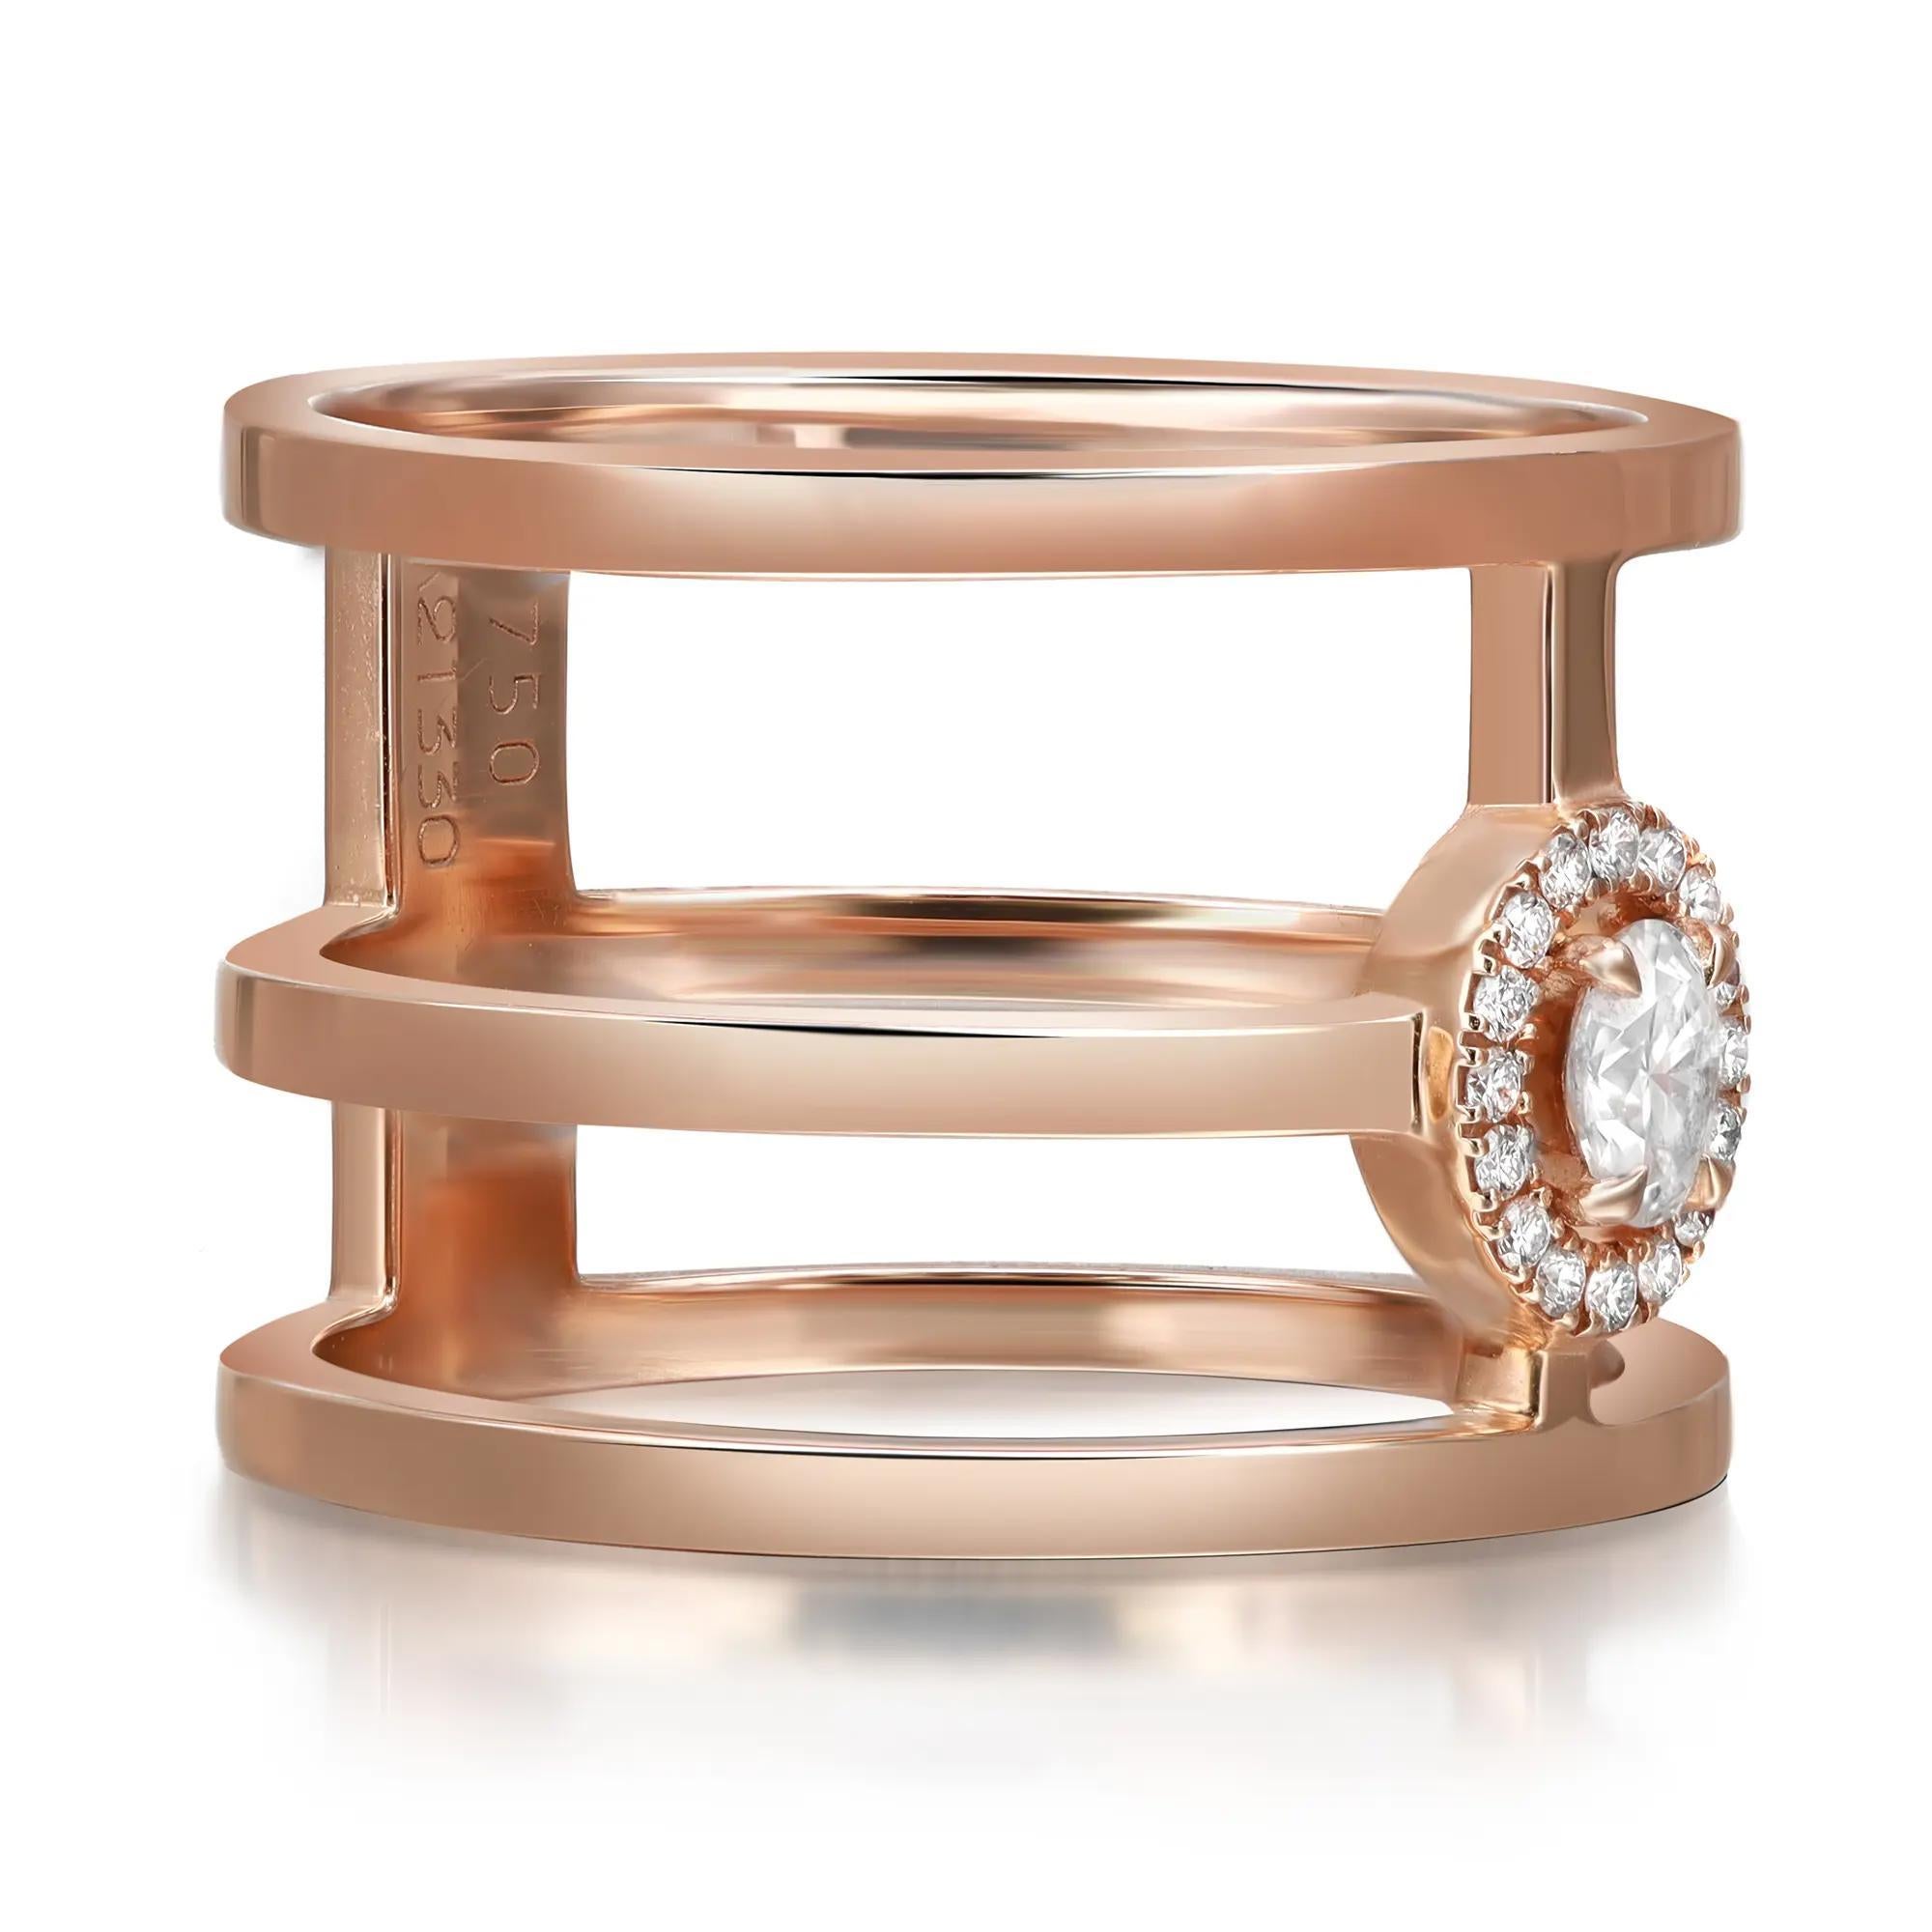 Sprechen Sie von dem kühnen und schönen Messika Glam'Azone Diamantring mit breitem Band. Dieser Ring zeigt einen schimmernden ovalen Diamanten in der Mitte, umgeben von einem Halo aus runden Diamanten im Brillantschliff in einem 3-Band-Ring.